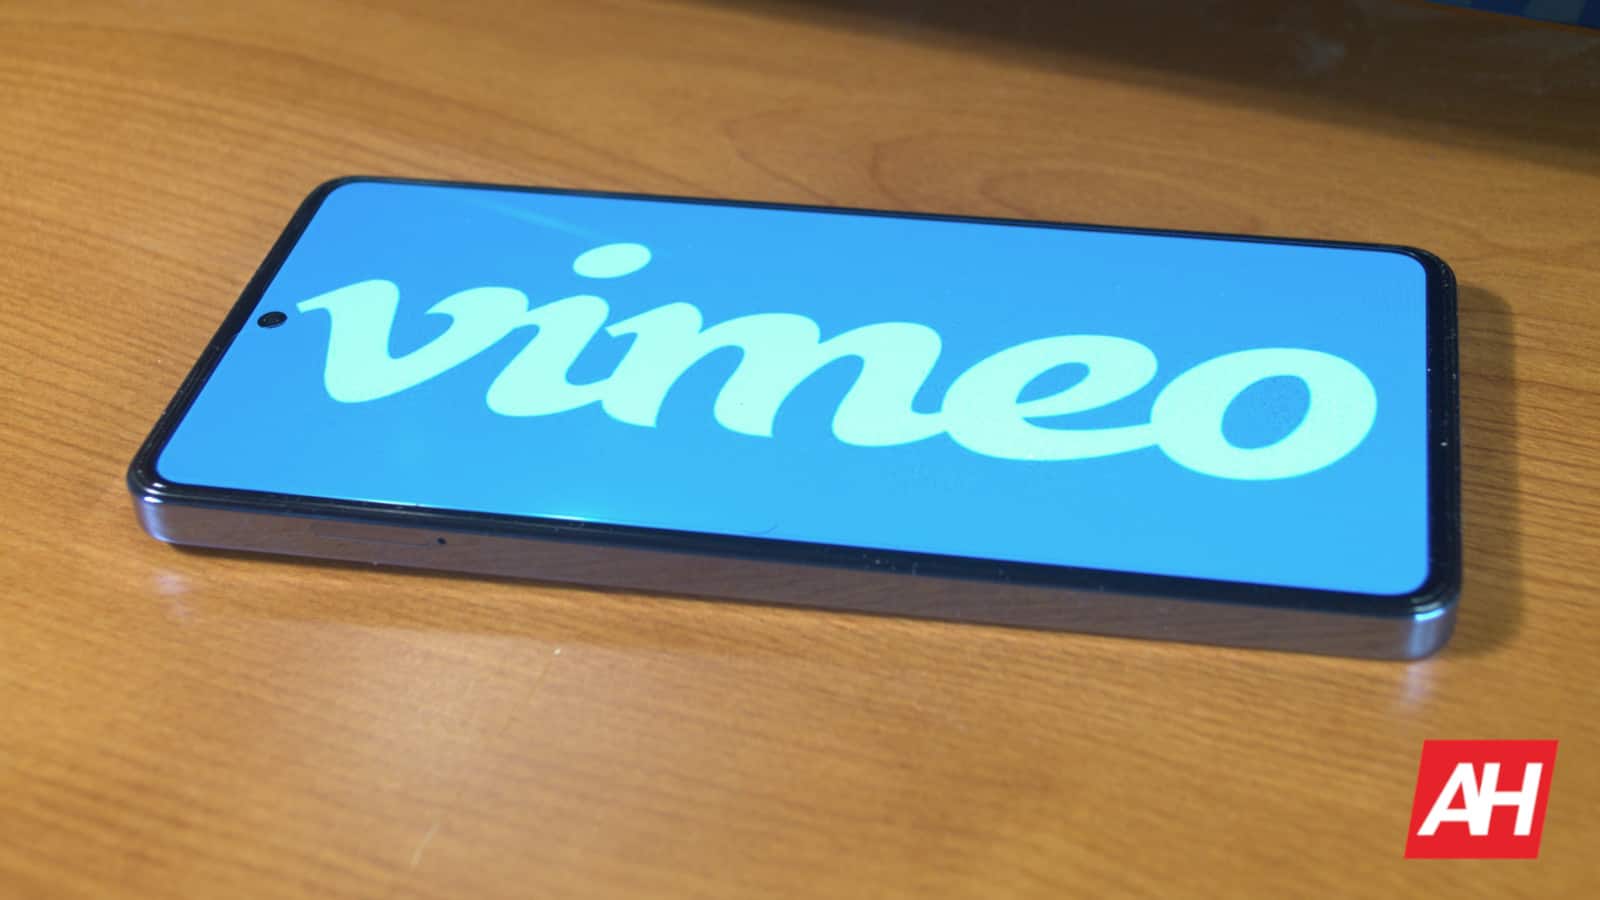 تقوم Vimeo بإيقاف تشغيل تطبيقات التلفزيون الخاصة بها